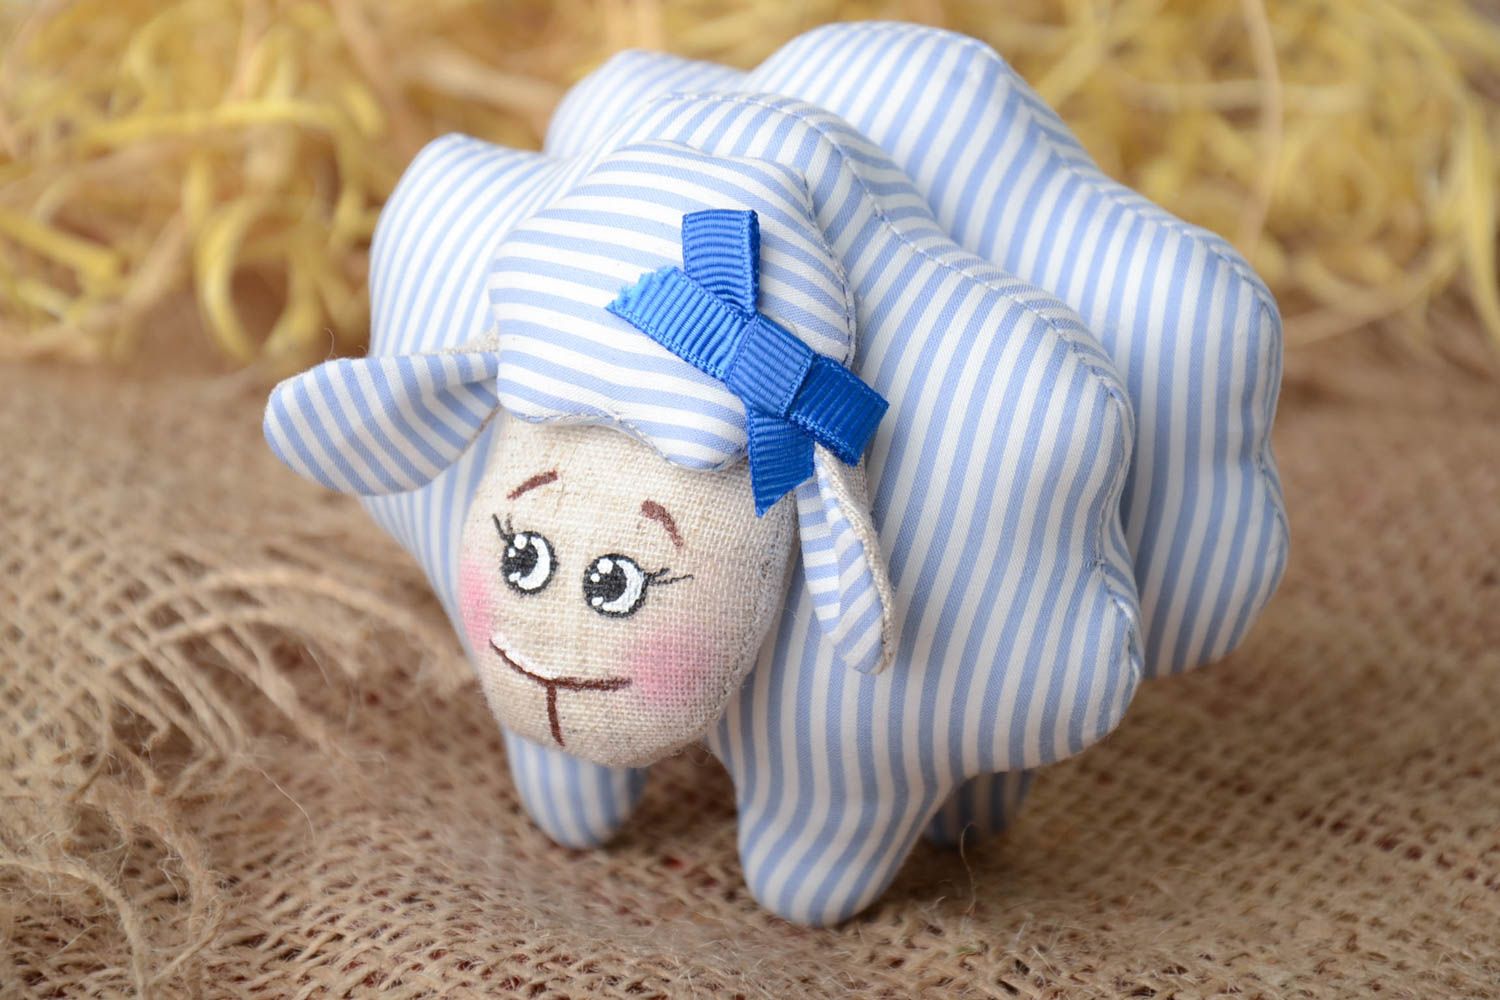 Мягкая тканевая игрушка овечка из льна расписная ручной работы голубая в полоску фото 1